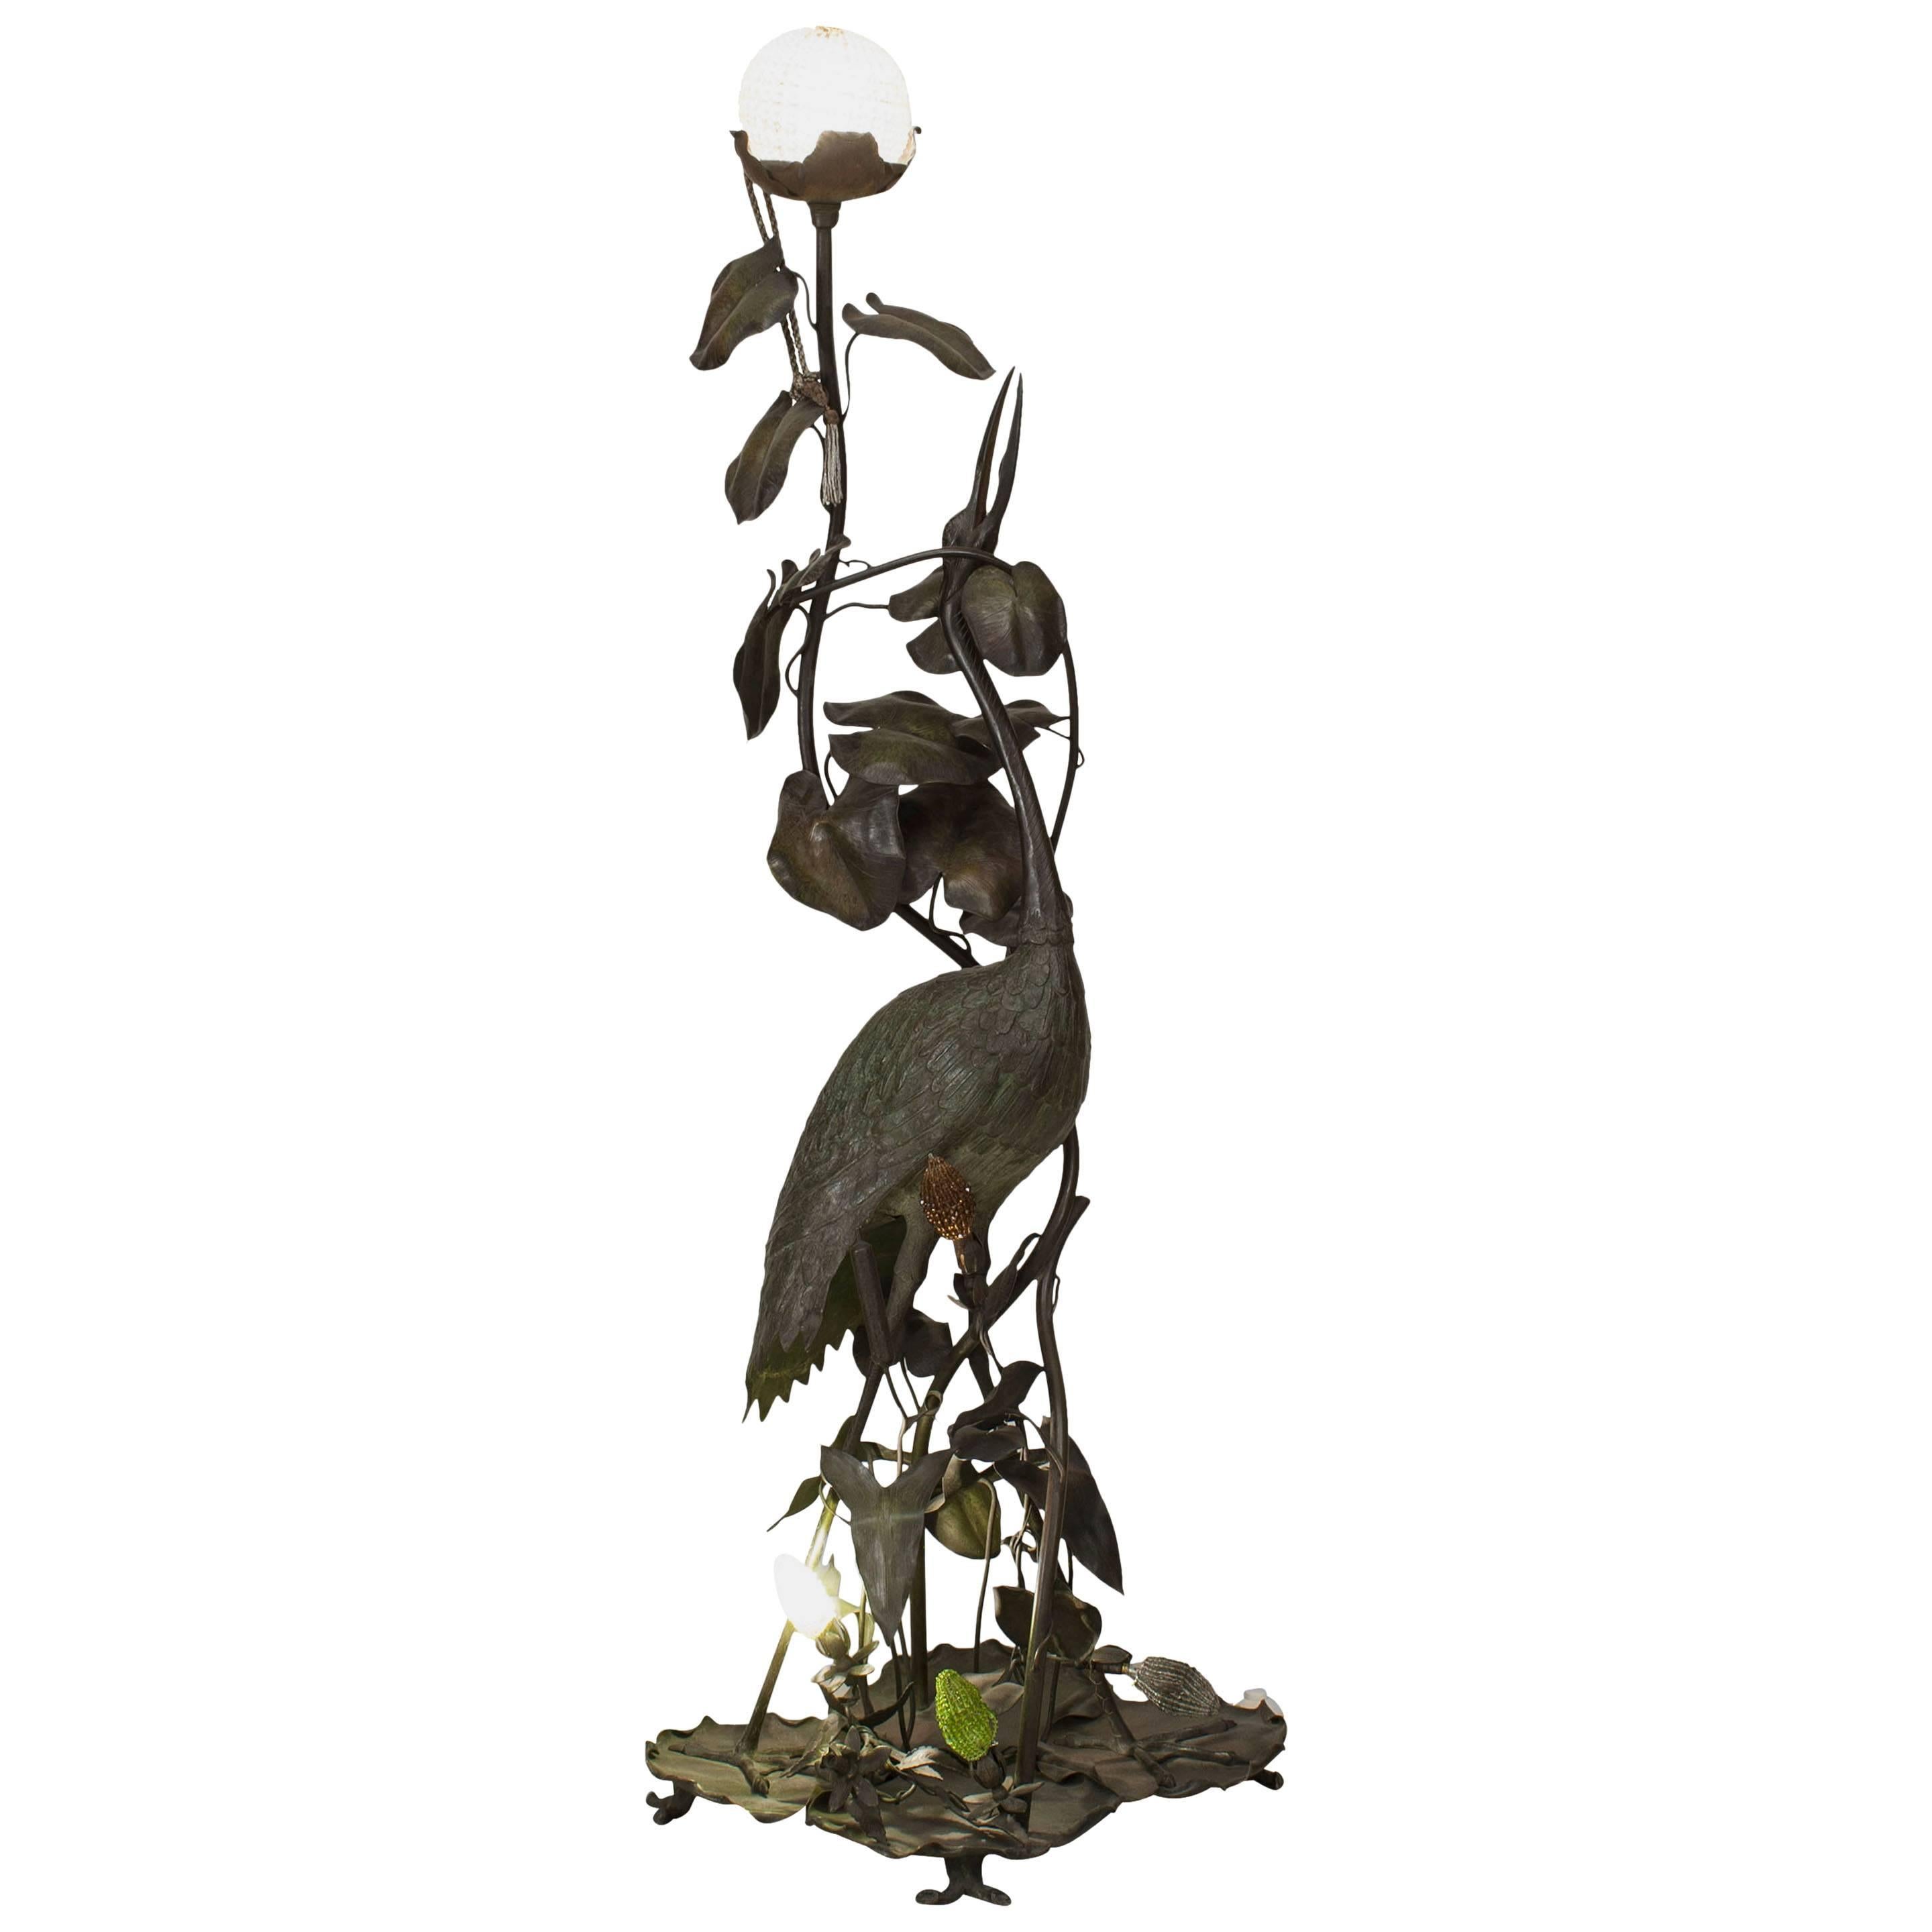 Stehlampe aus gegossenem Metall im französischen Art nouveau-Stil mit Darstellung eines Herons mit Lilienblättern